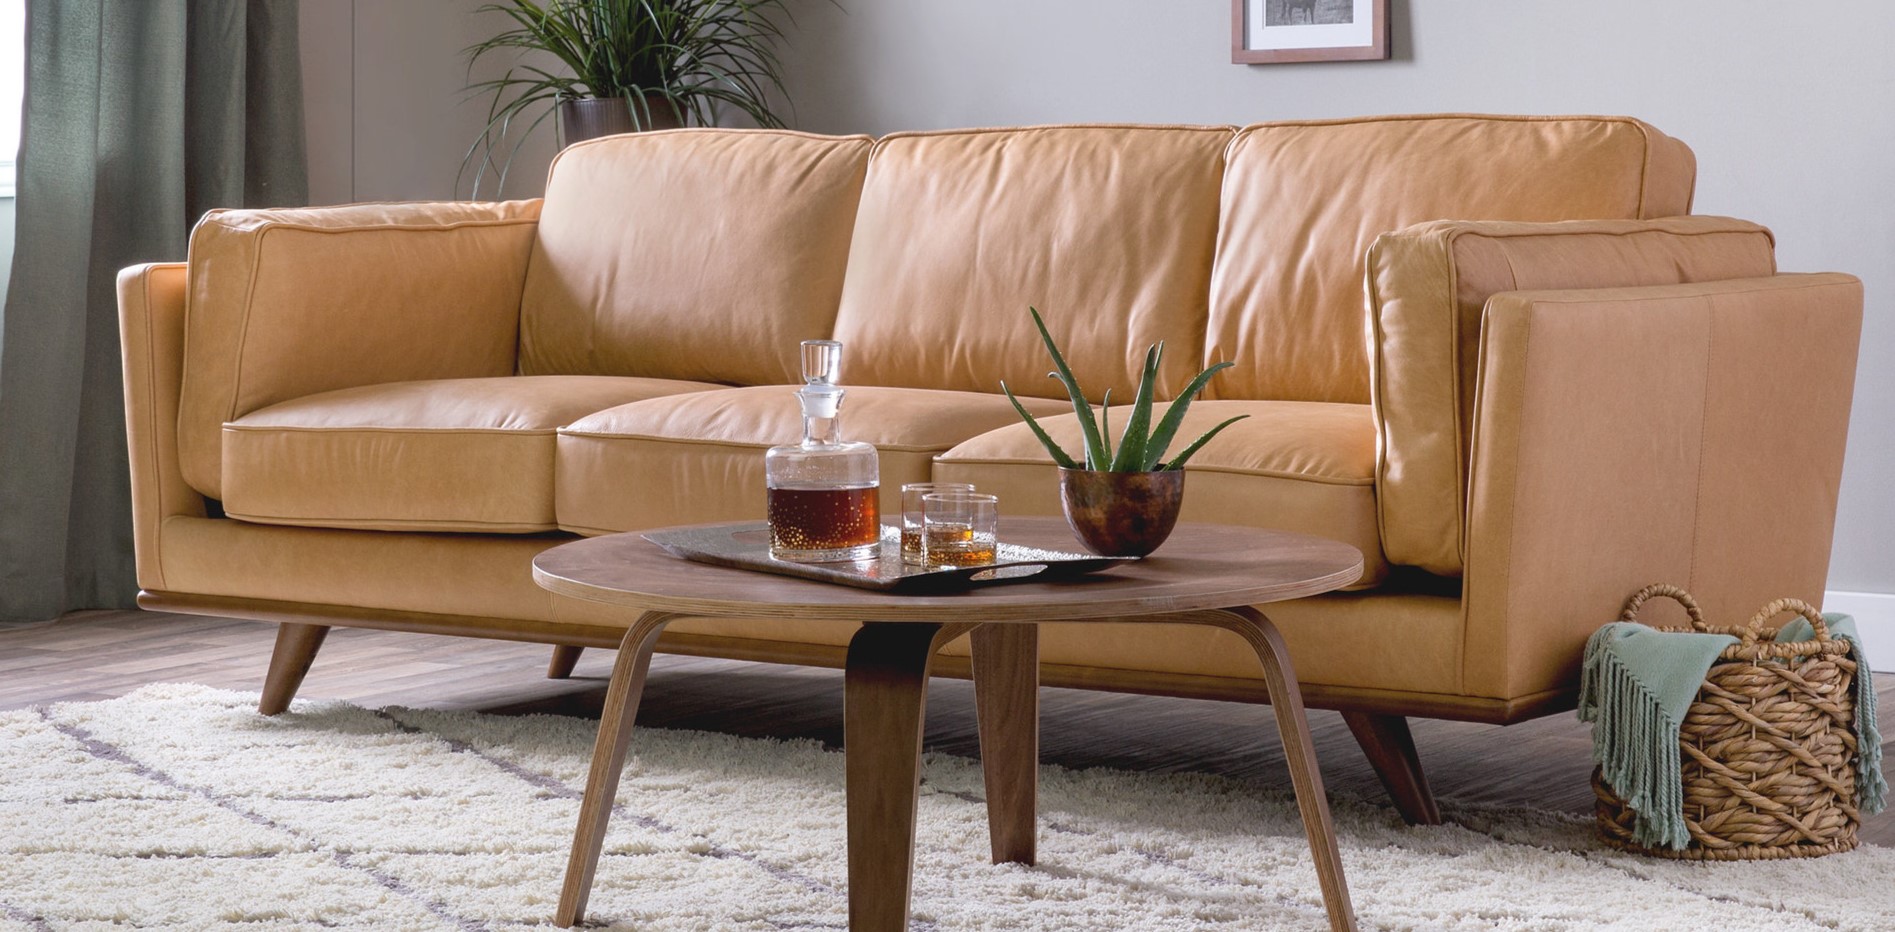 Бежевый кожаный диван идеально подойдет для современного интерьера гостиной